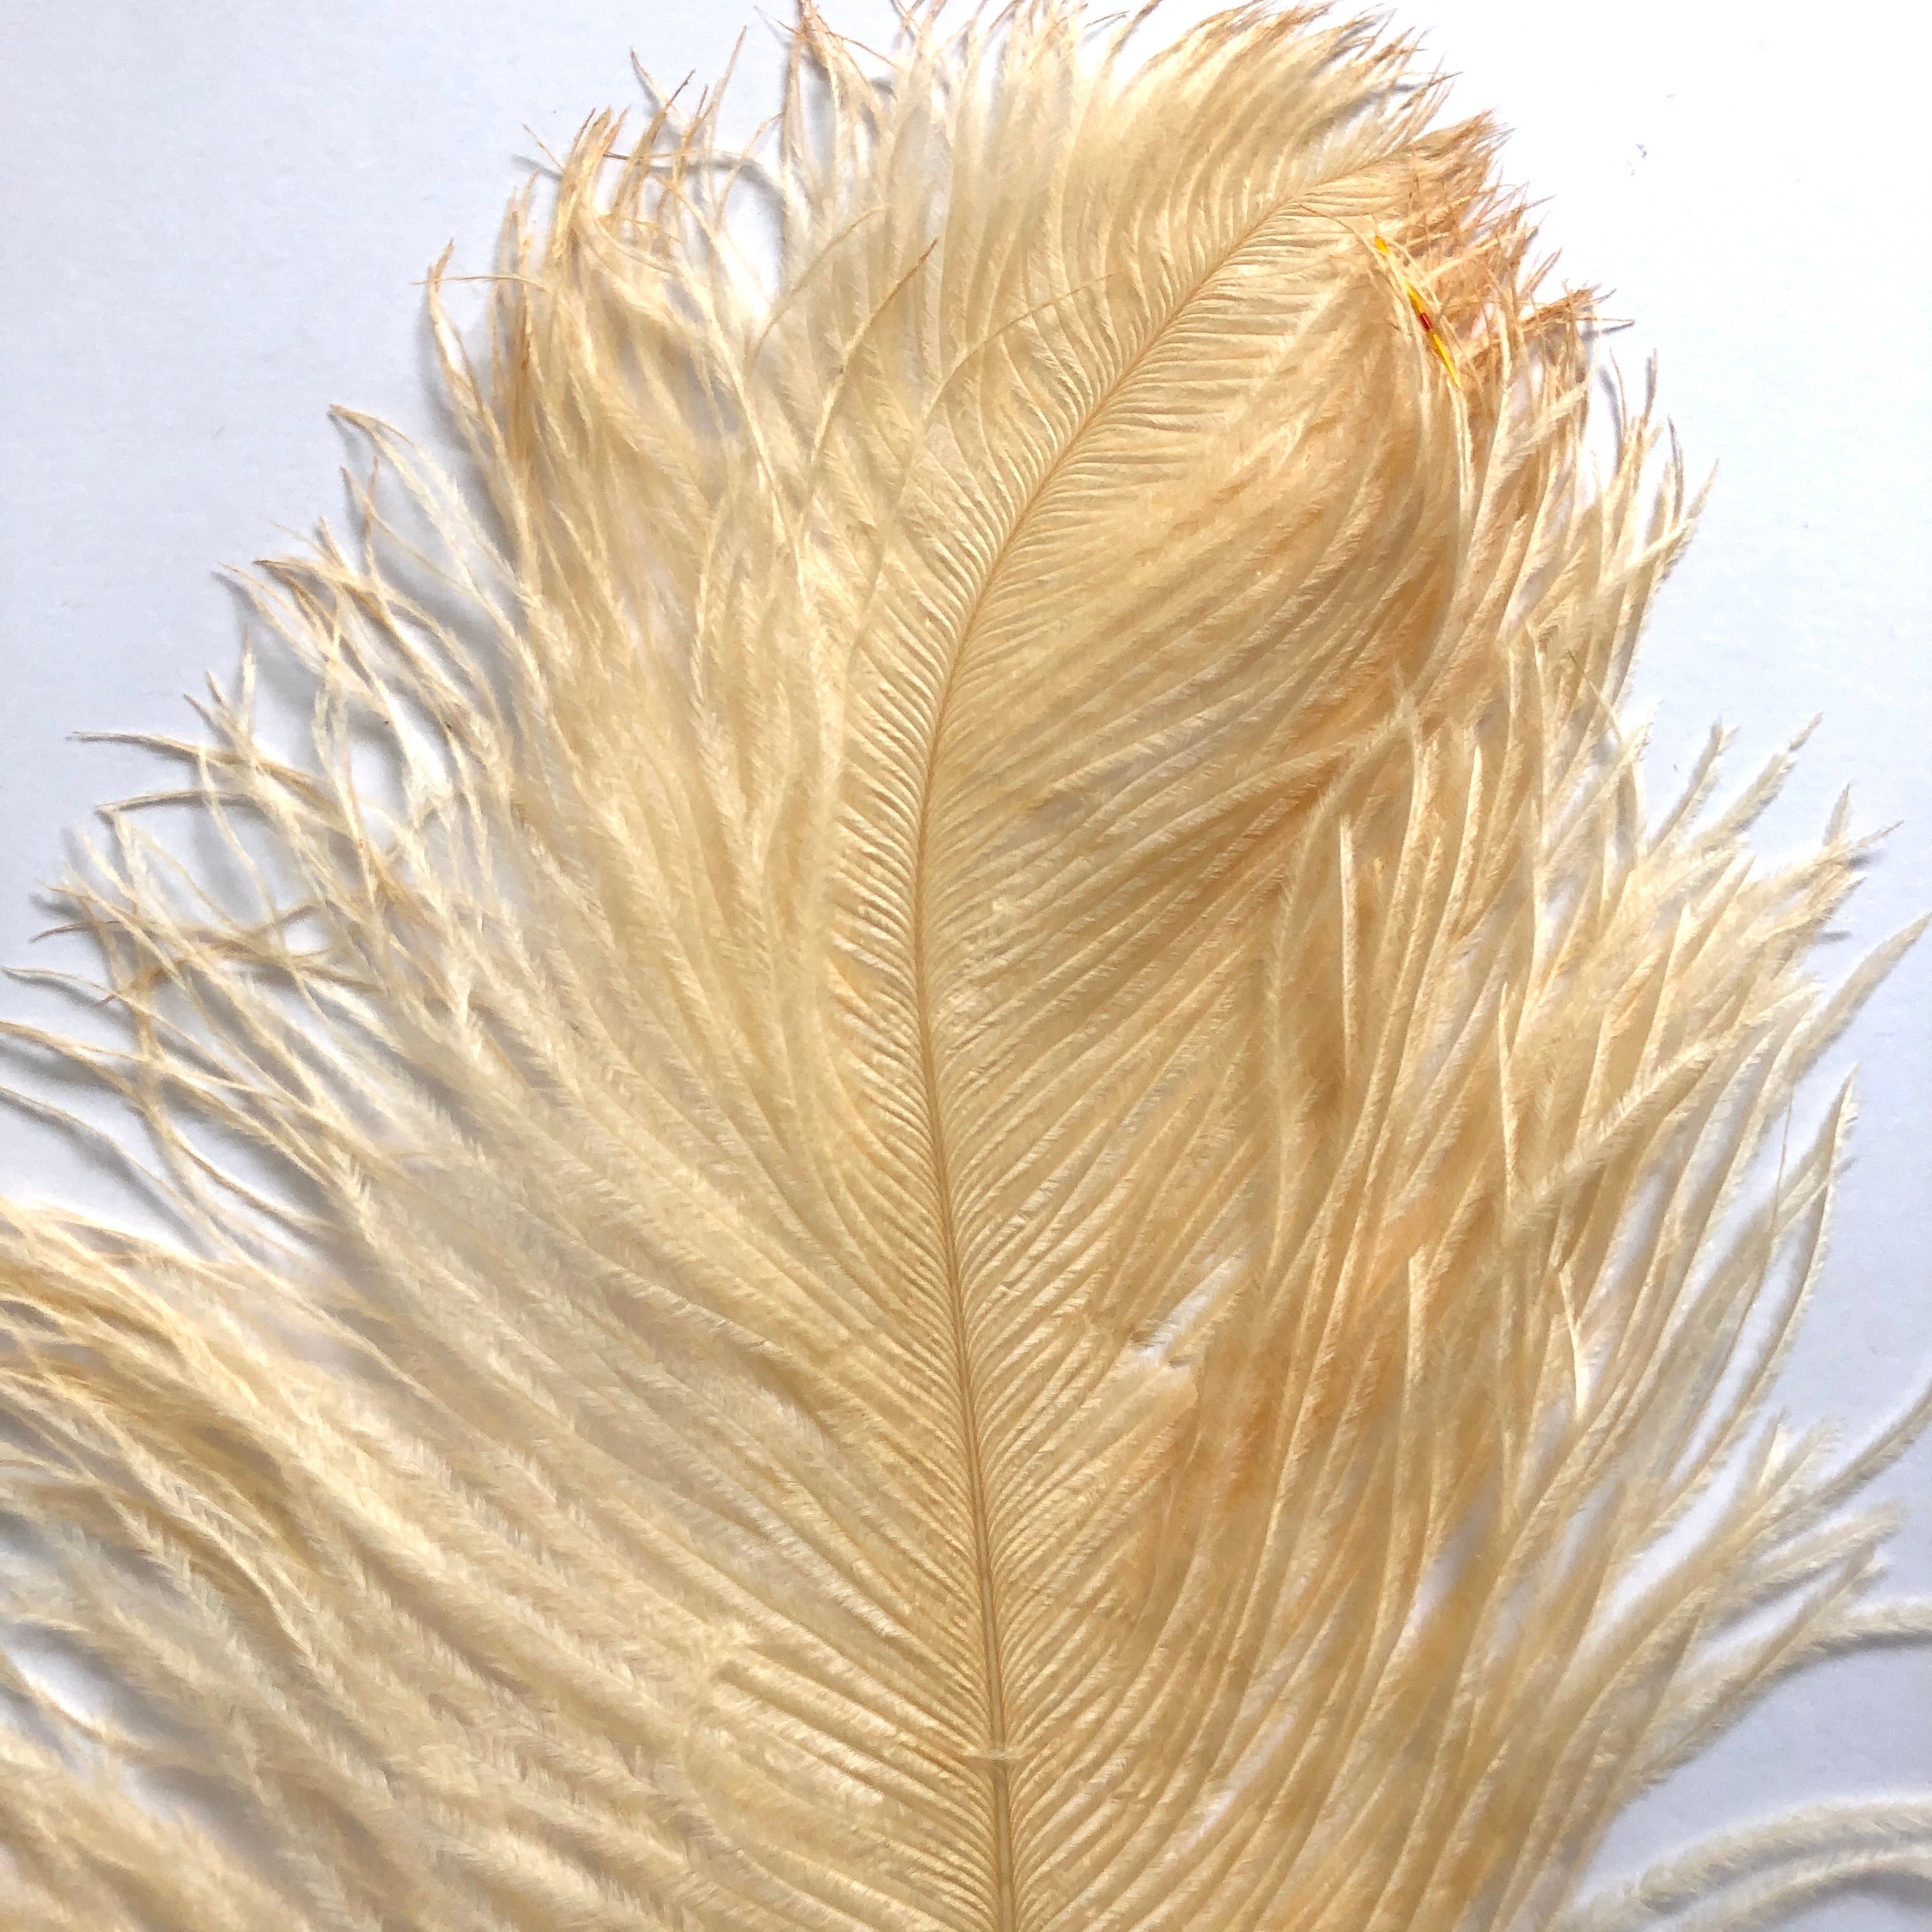 Ostrich Feather Drab 27-32cm x 5 pcs - Soft Apricot ((SECONDS))